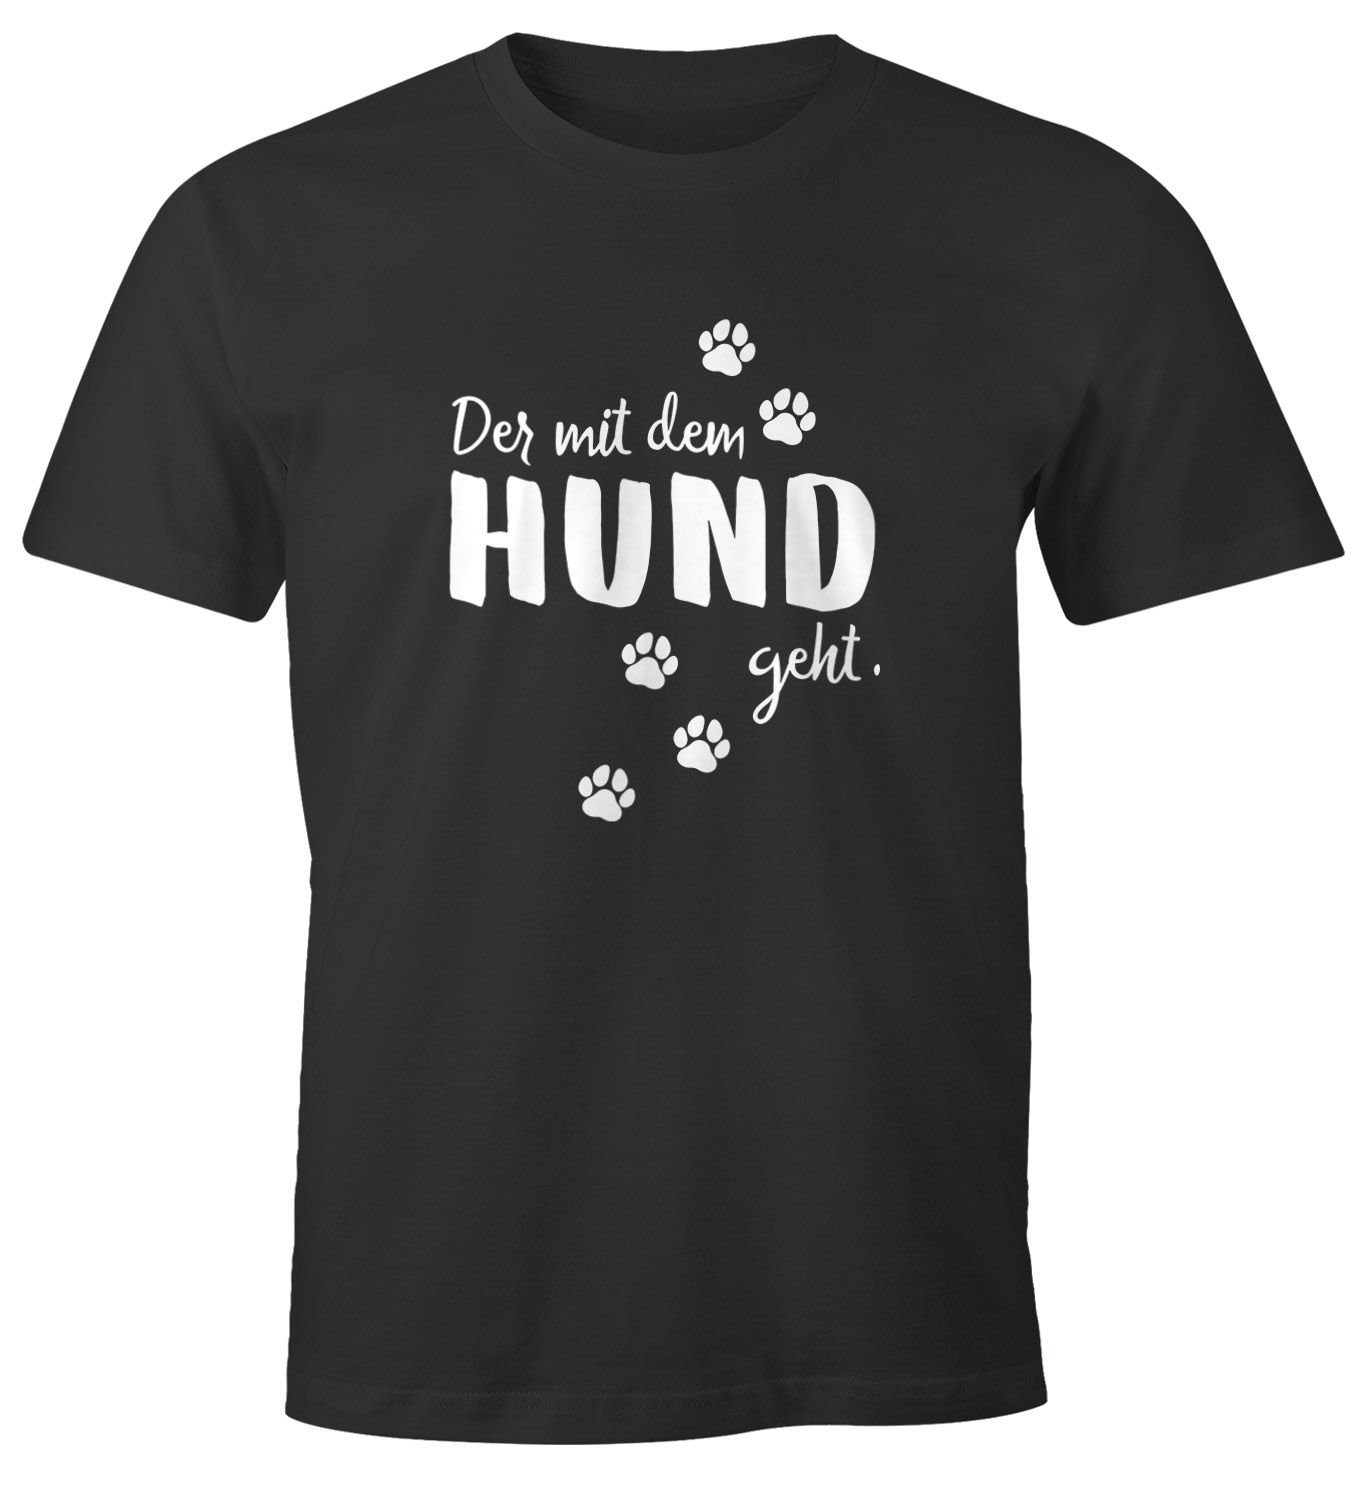 Der mit mit Shirt Hundemotiv Moonworks® geht Herren mit Print Hund Hundesprüche T-Shirt dem Pfoten MoonWorks Pfotenabdrücke Print-Shirt